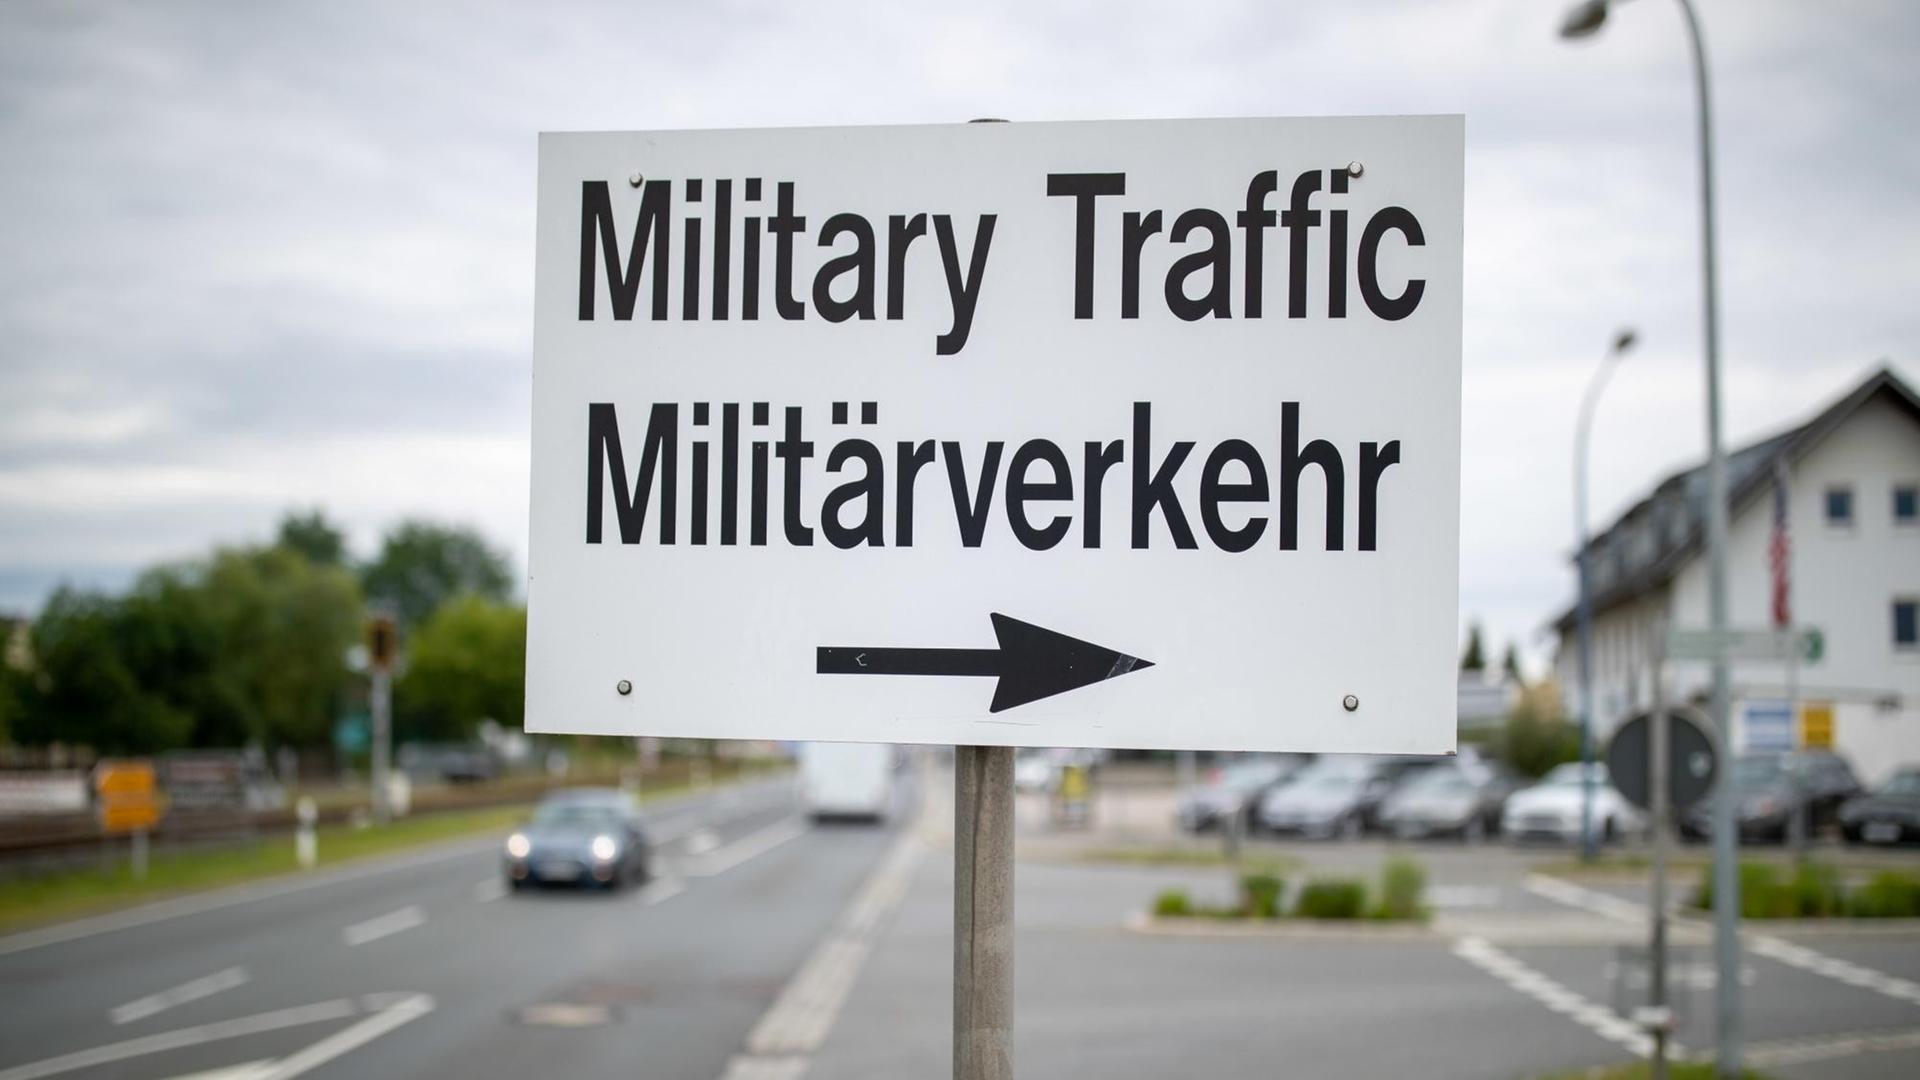 "Military Traffic - Militärverkehr" steht auf einem Schild neben einem Eingang zum Truppenübungsplatz der US-Army im Bayrischen Grafenwöhr.